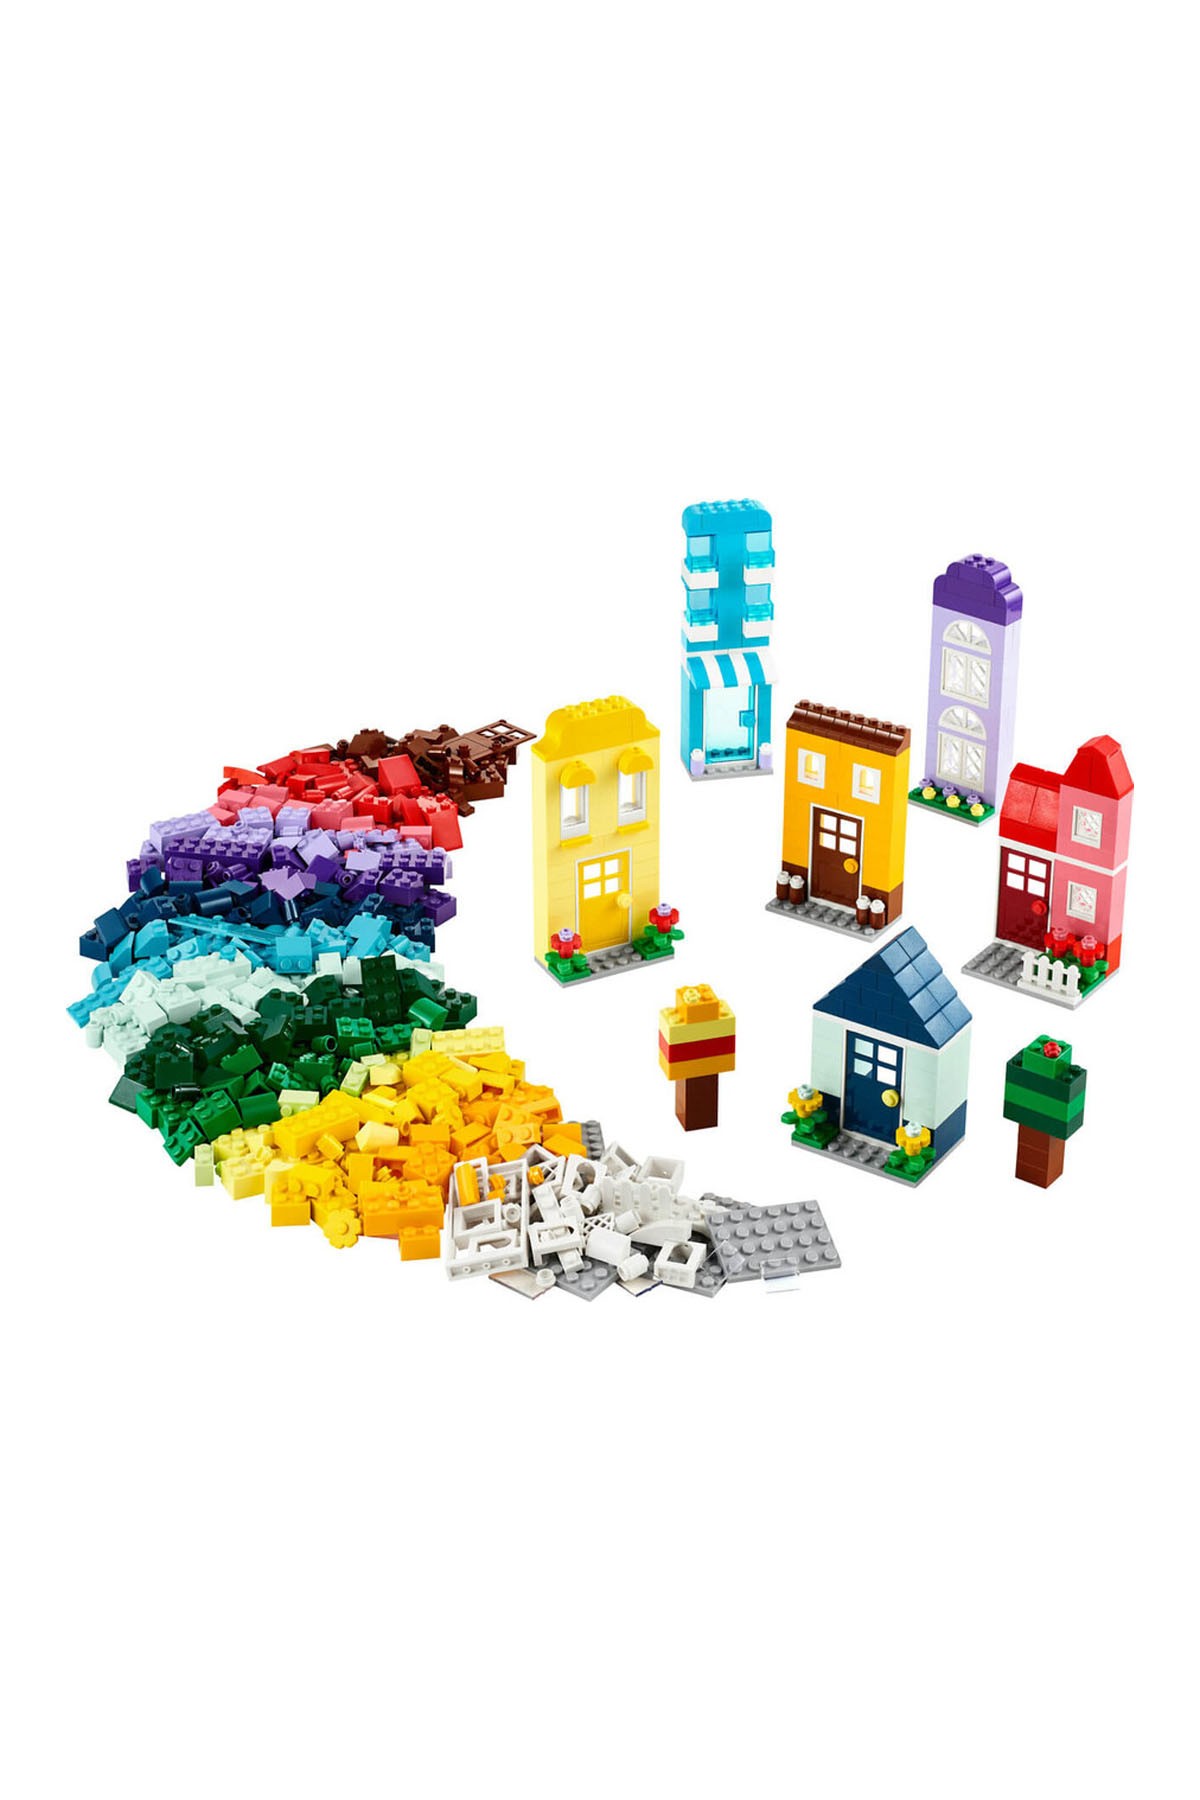 Lego Classic Yaratıcı Evler 11035